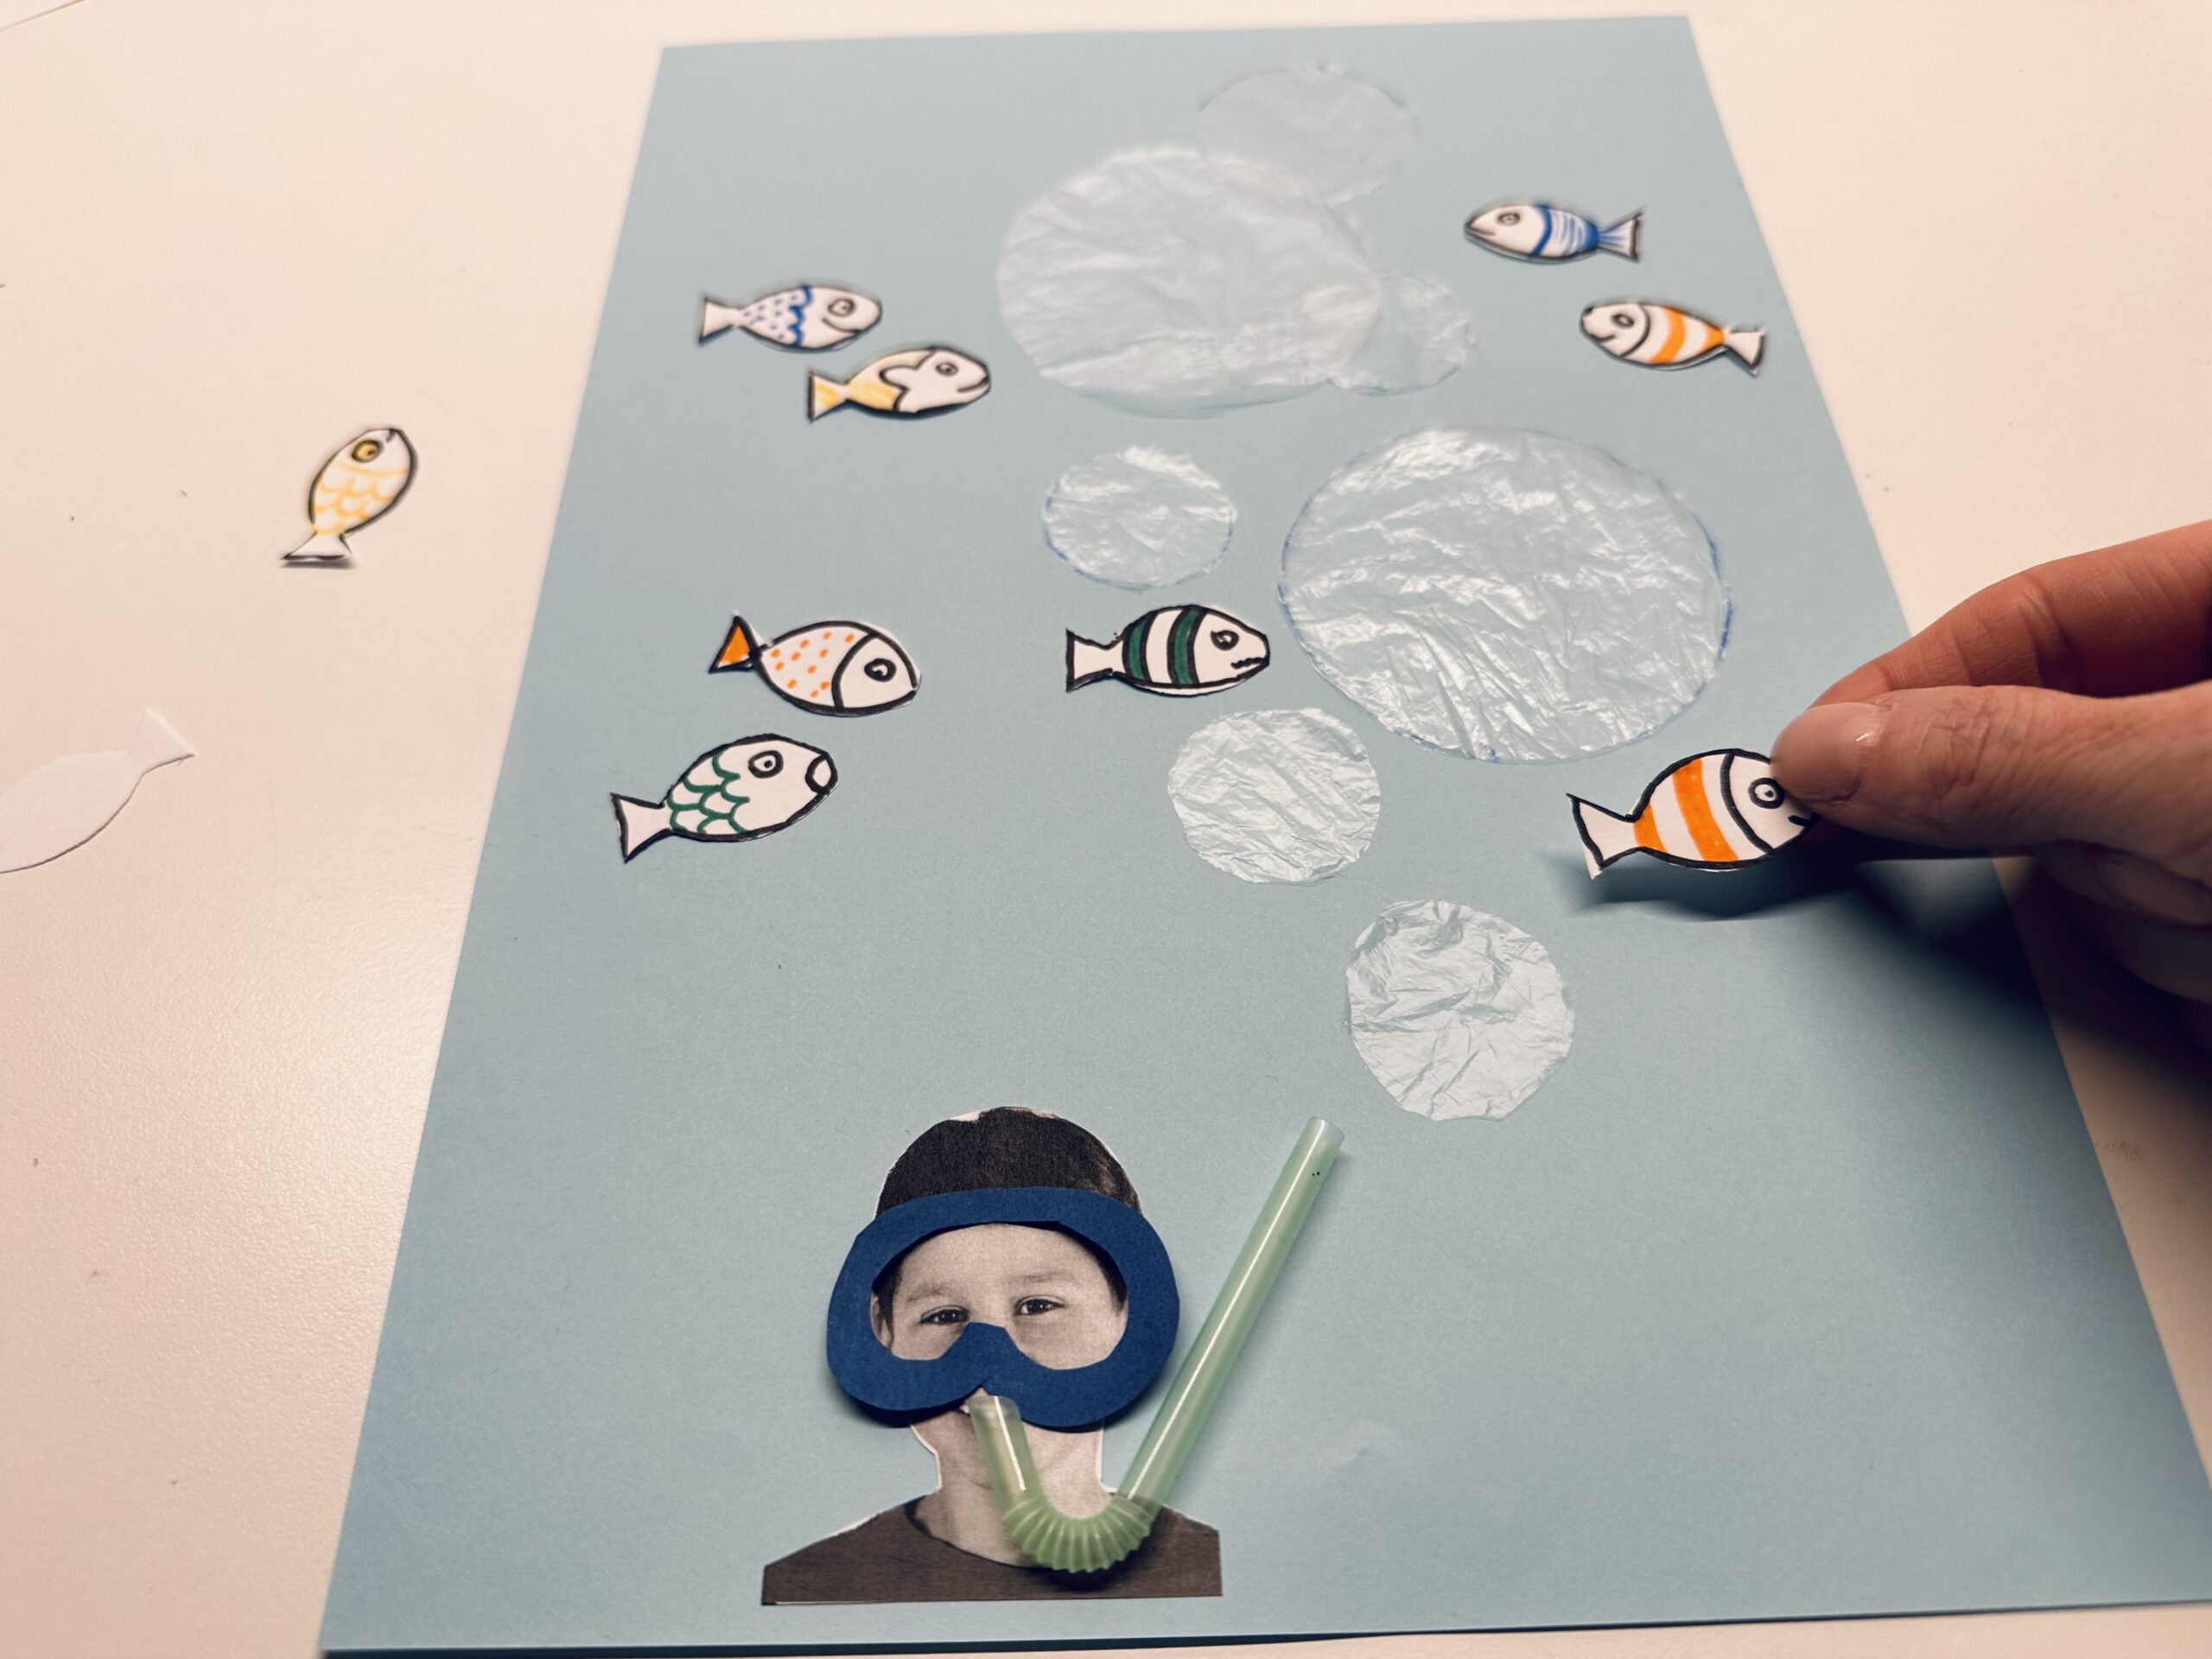 Bild zum Schritt 31 für das Bastel- und DIY-Abenteuer für Kinder: 'Ordnet die fertigen Fische auf eurem Bild an. So, als...'